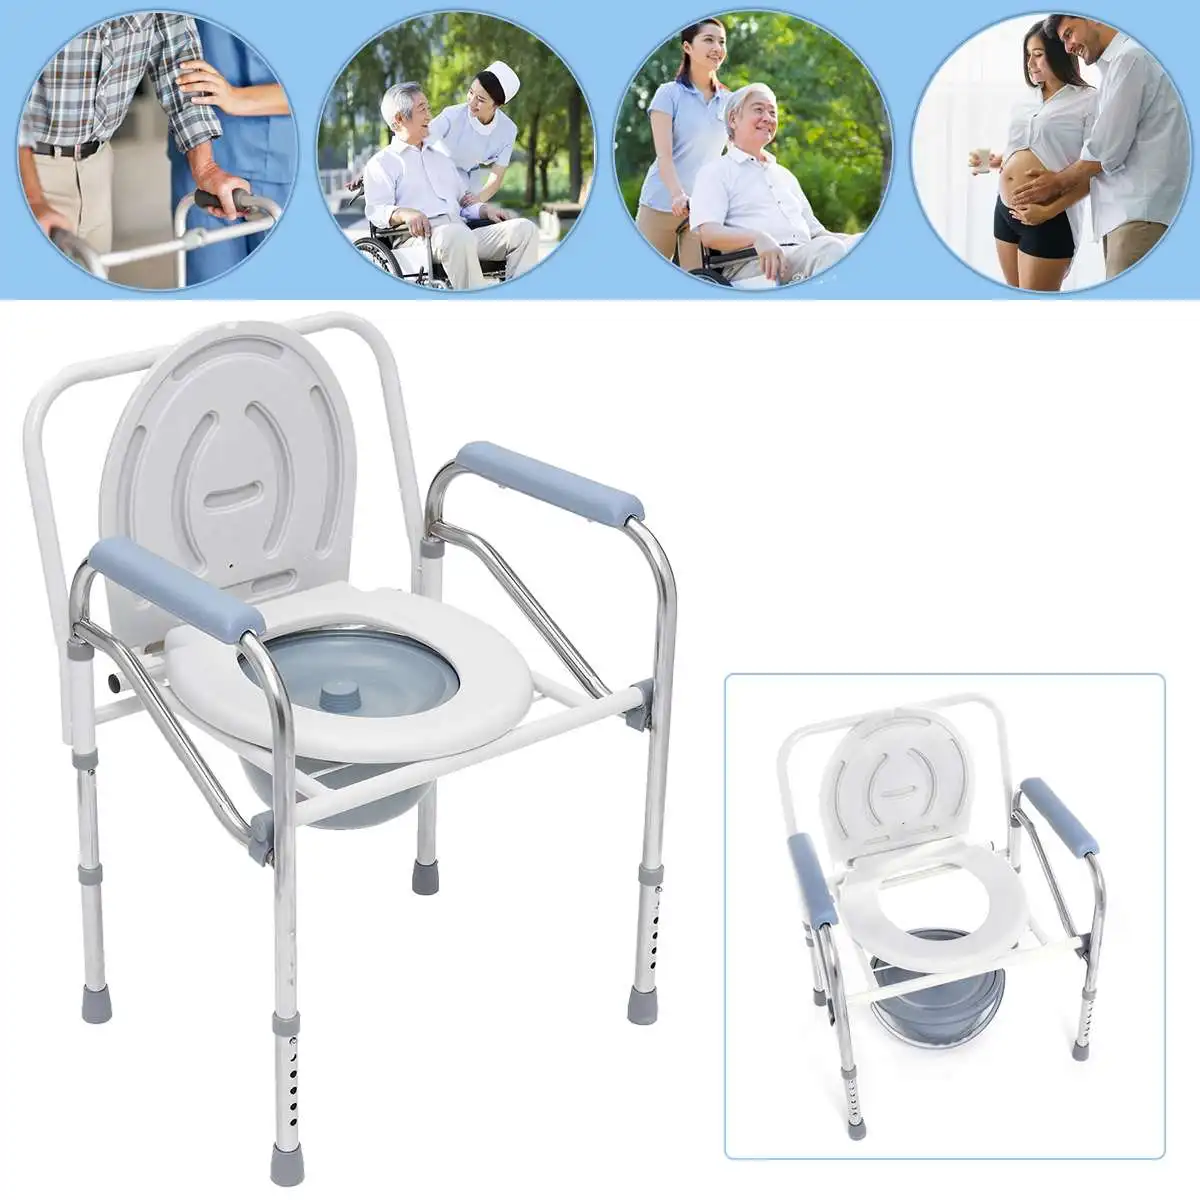 저렴한 휴대용 접이식 침대 옆 욕실 변기 화장실 편리한 변기 좌석 샤워 의자 노인 장애인을 위한 미끄럼 방지 발, 변기 화장실 샤워 의자